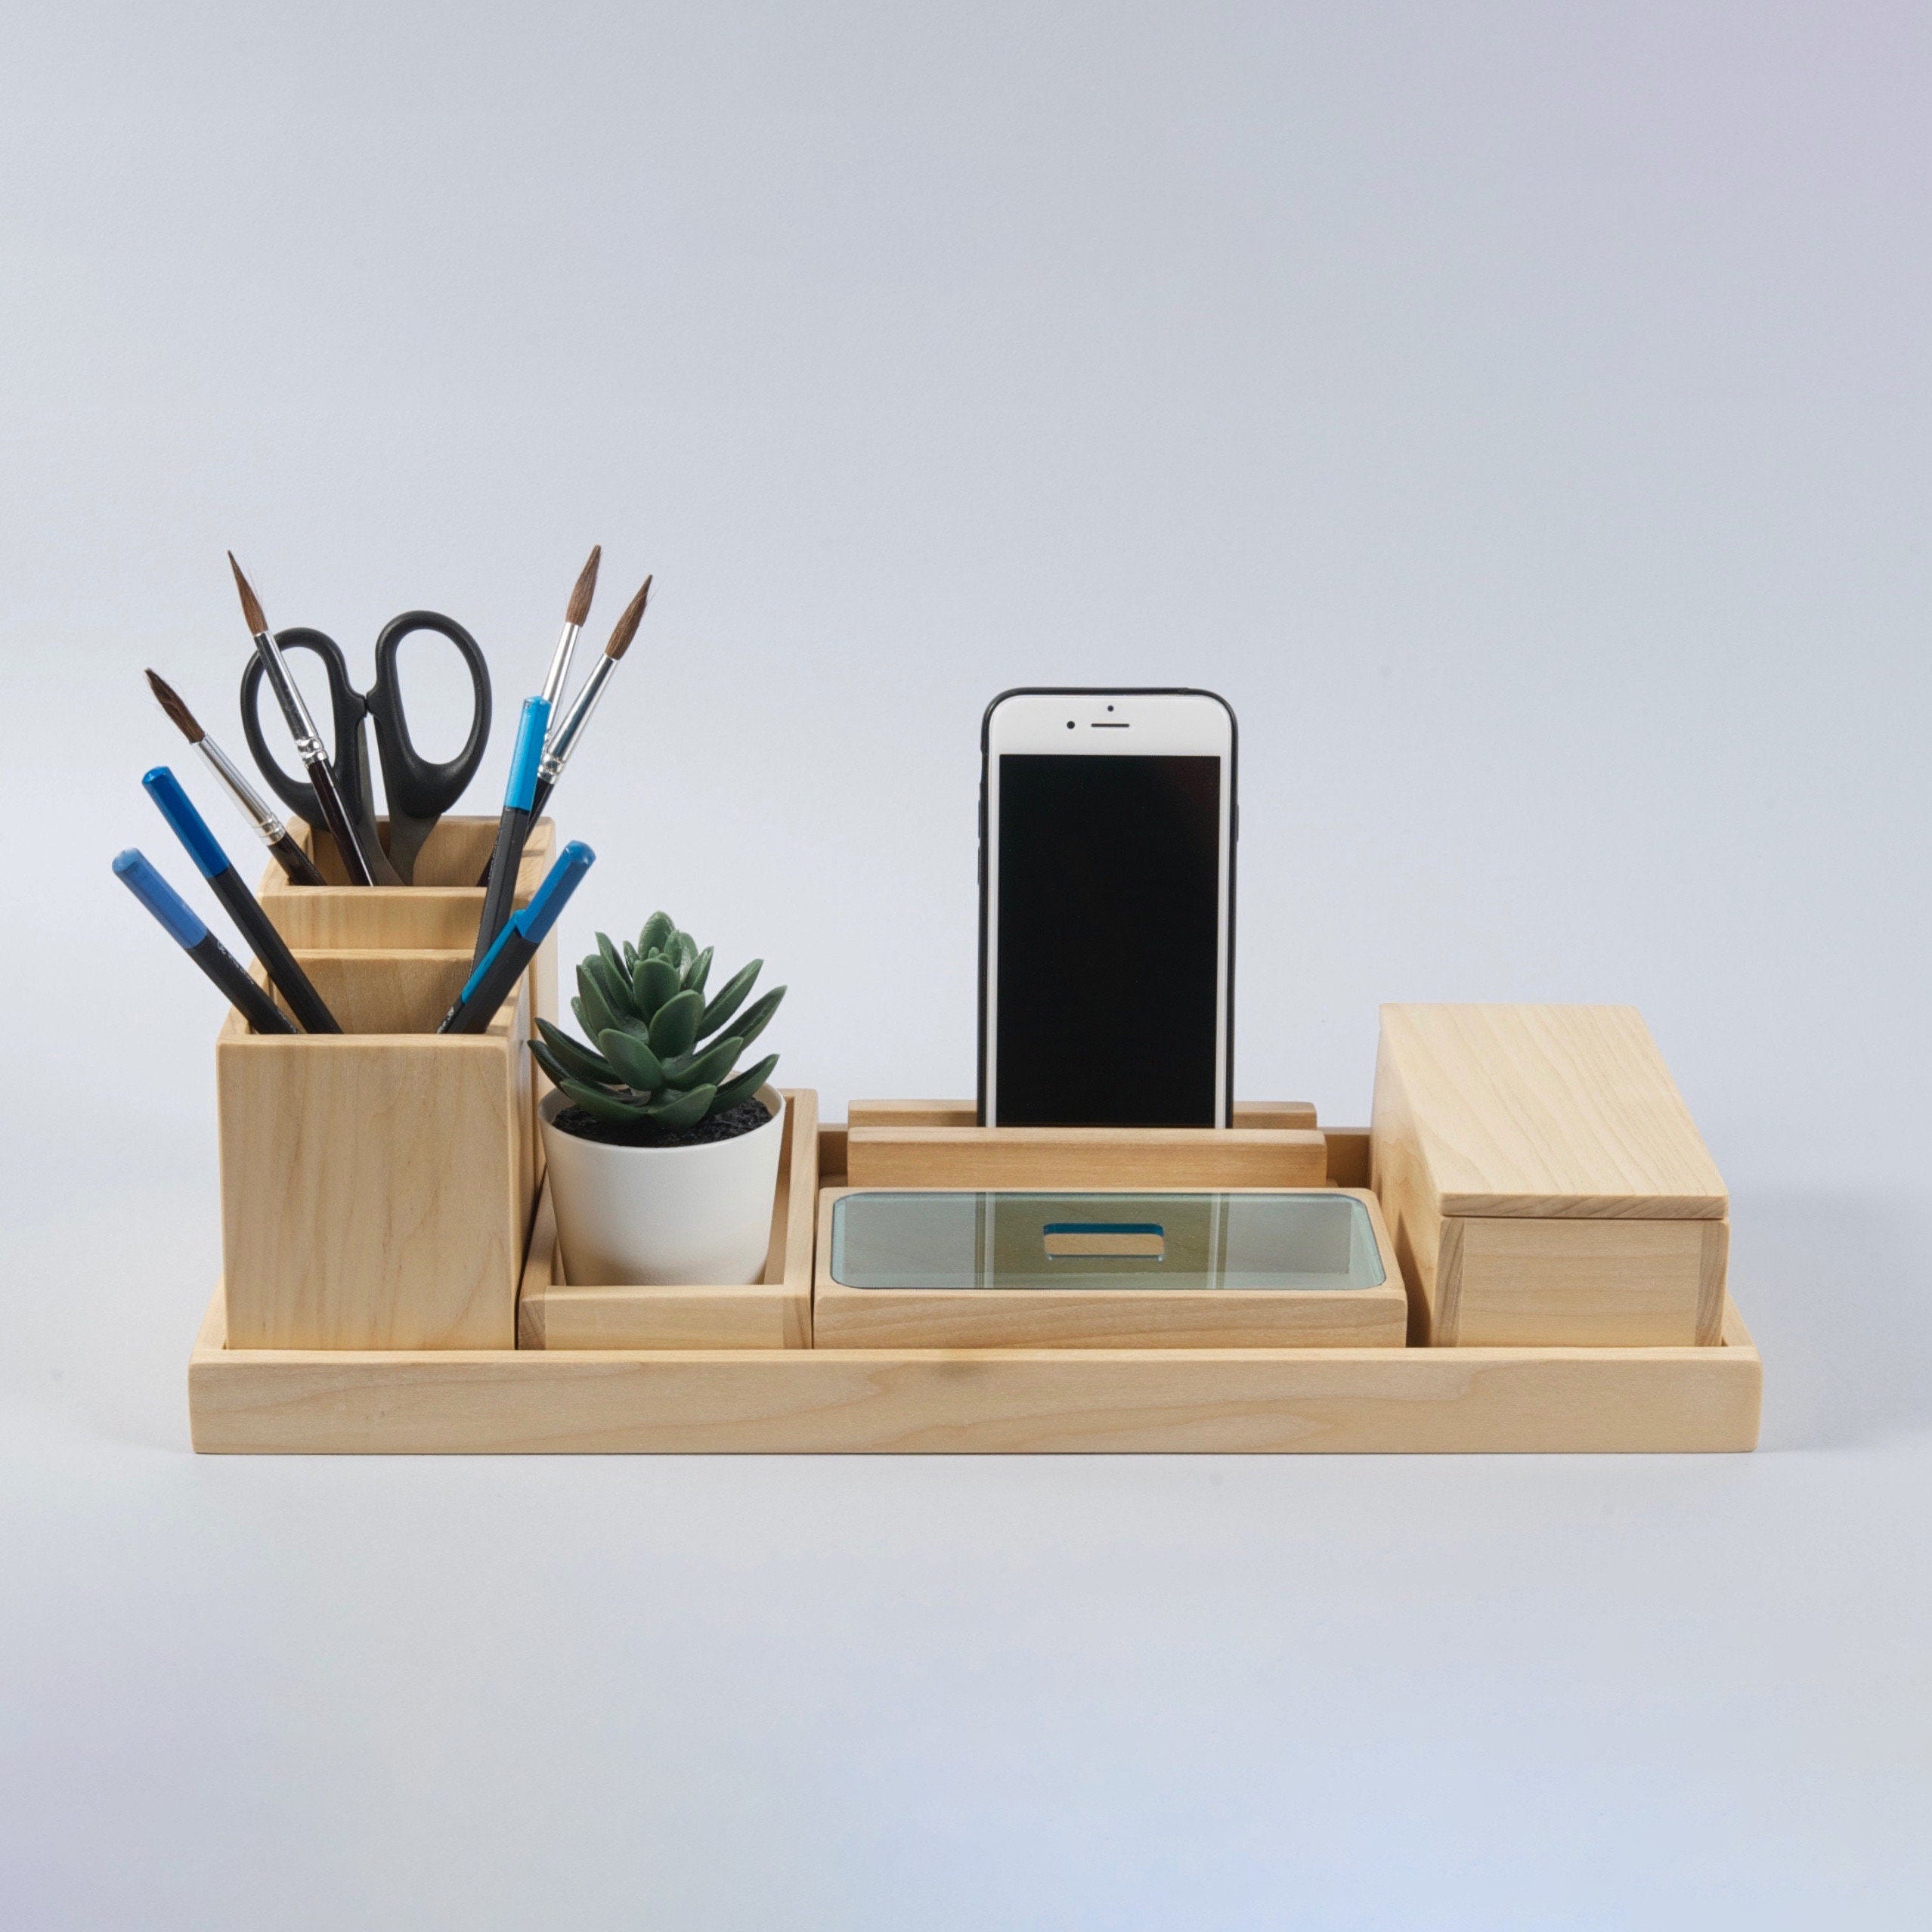 Buy Wood Desk Organizer Gift for Men and Women Office Desk Online ...